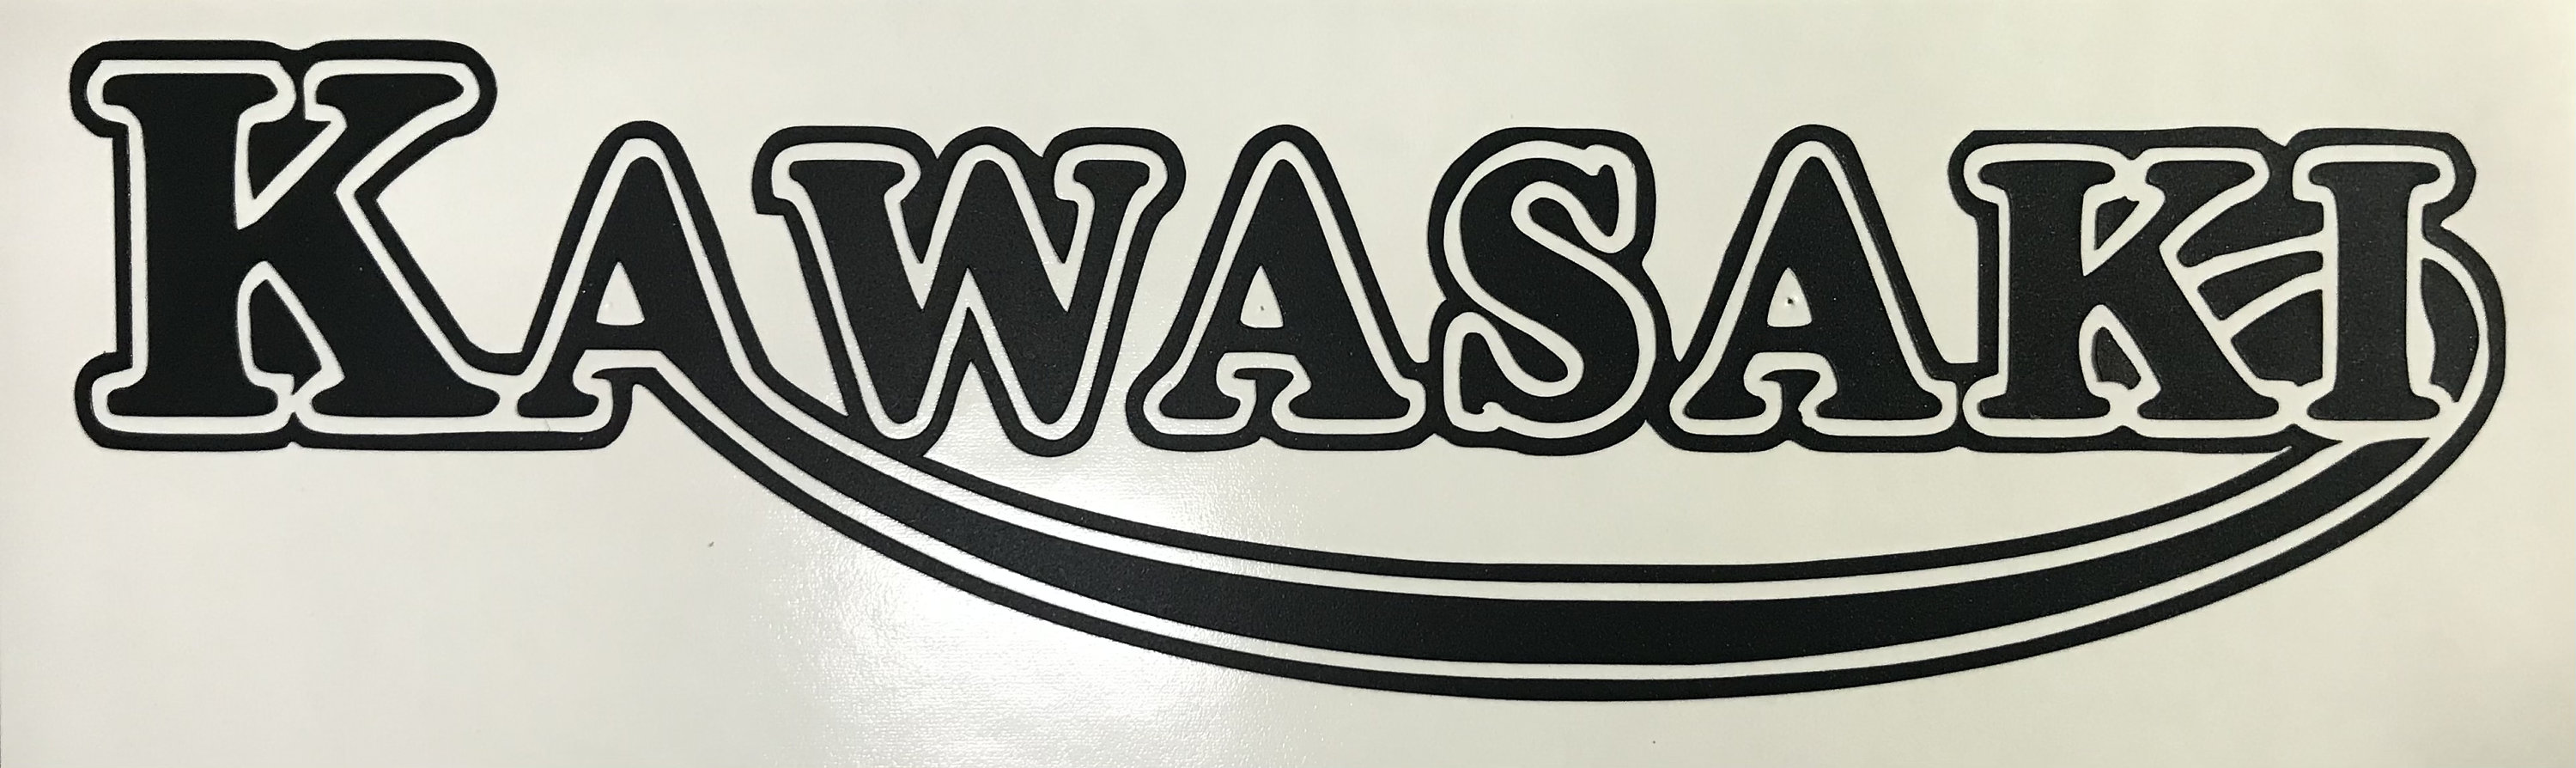 File:Kawasaki-Asao-logo.svg - Wikipedia